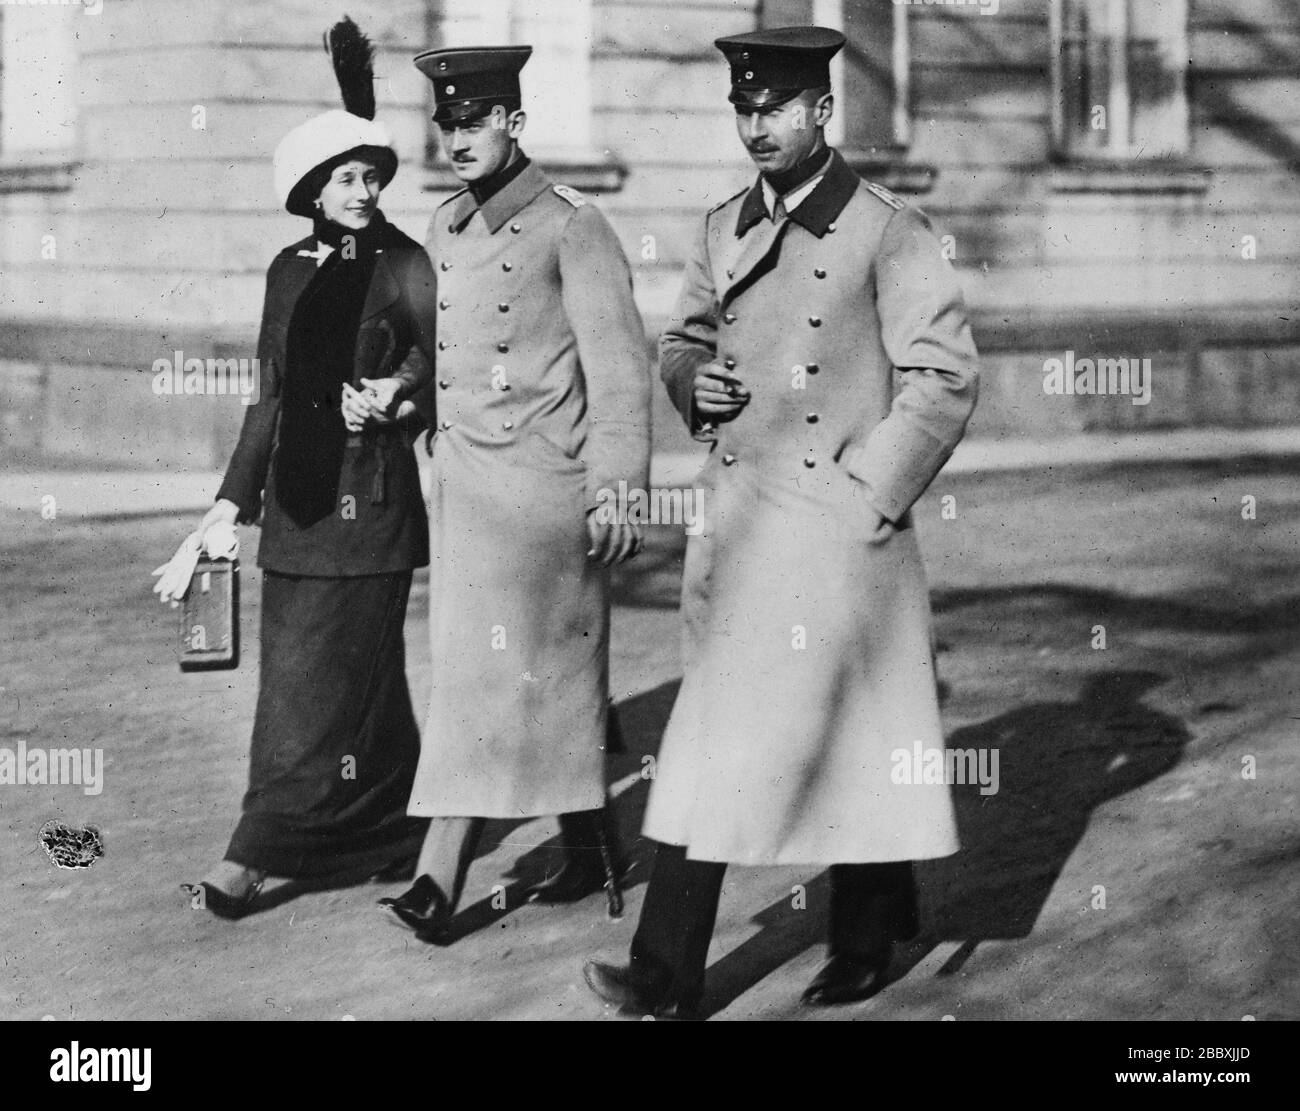 Espectáculos de fotos (de izquierda a derecha), la princesa Victoria Louise de Prusia (llevando una cámara), su marido el príncipe Ernest Augustus, el Duque de Brunswick y el príncipe Oskar de Prusia (hermano de Victoria Louise) ca. 1913 Foto de stock